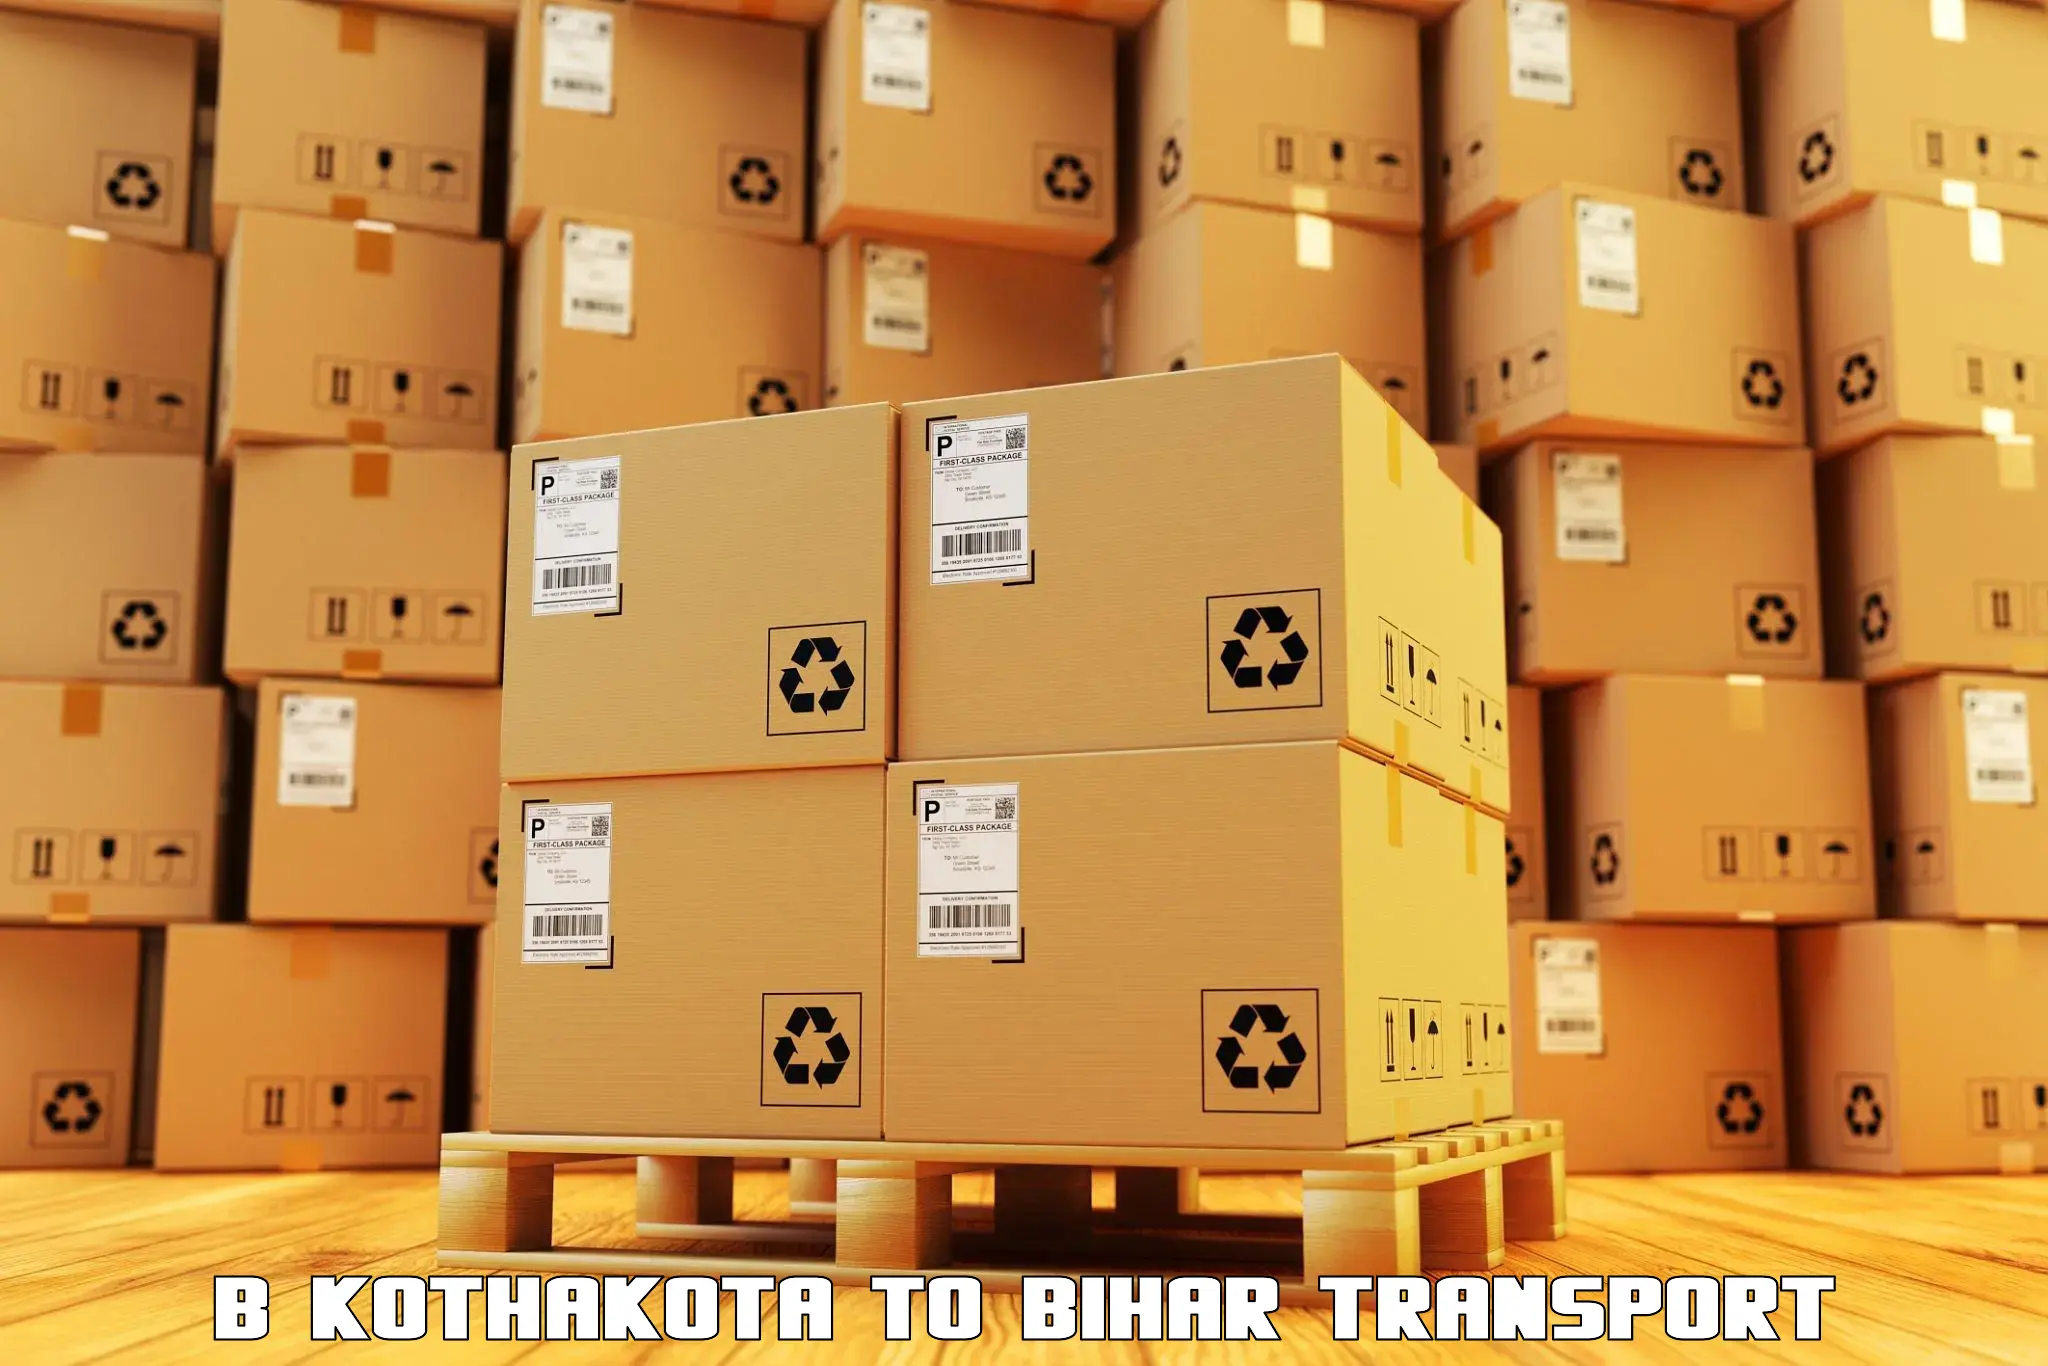 Truck transport companies in India B Kothakota to Kanker Nabinagar